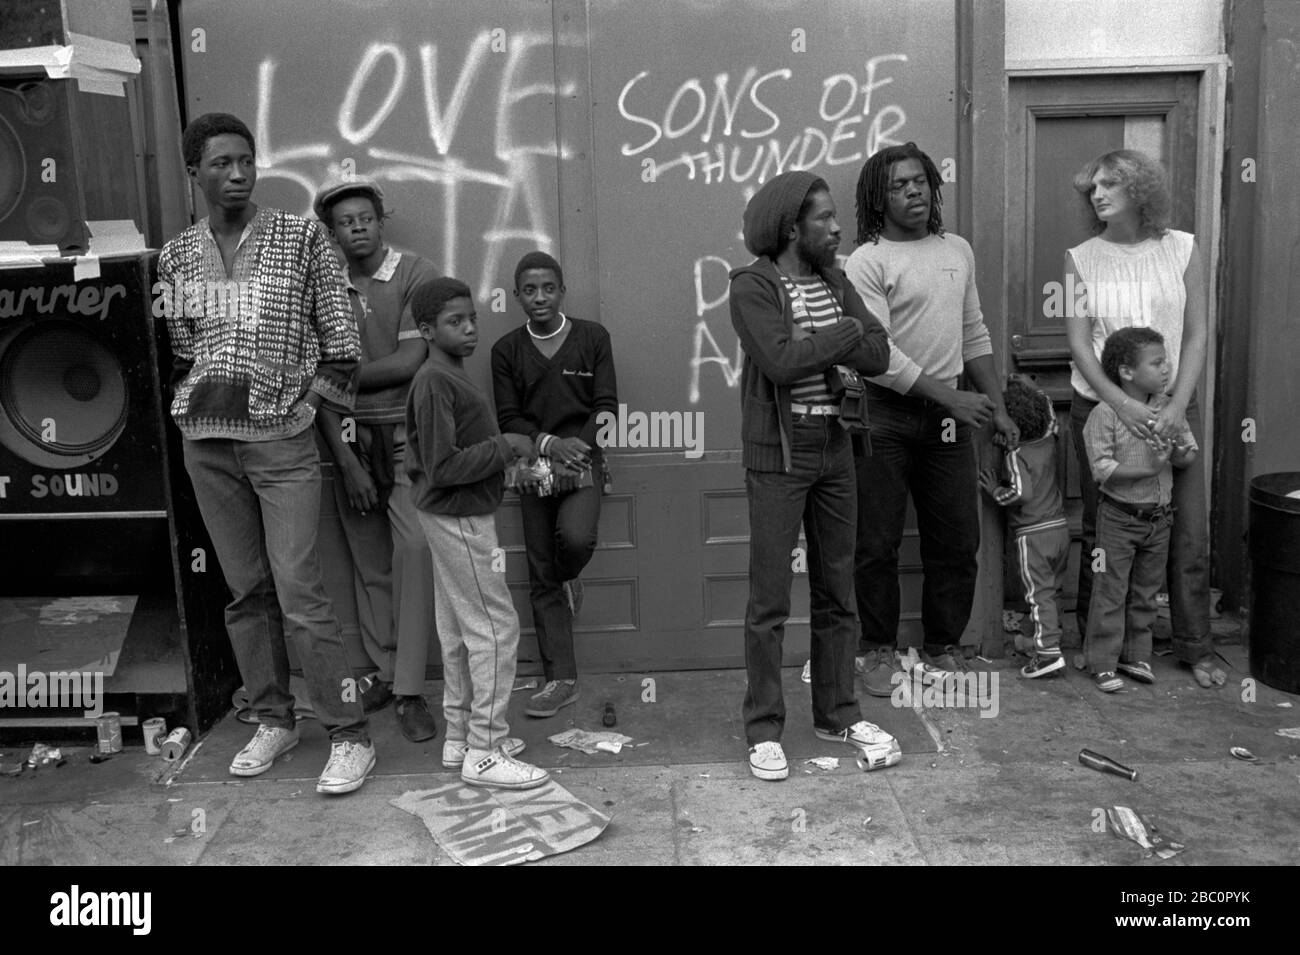 Black British Teenagers 1980s Notting Hill Carnival Londres. Enfant de race mixte avec mère blanche noir père britannique traînant autour de Reggae Sound System Angleterre 1981 Royaume-Uni HOMER SYKES Banque D'Images